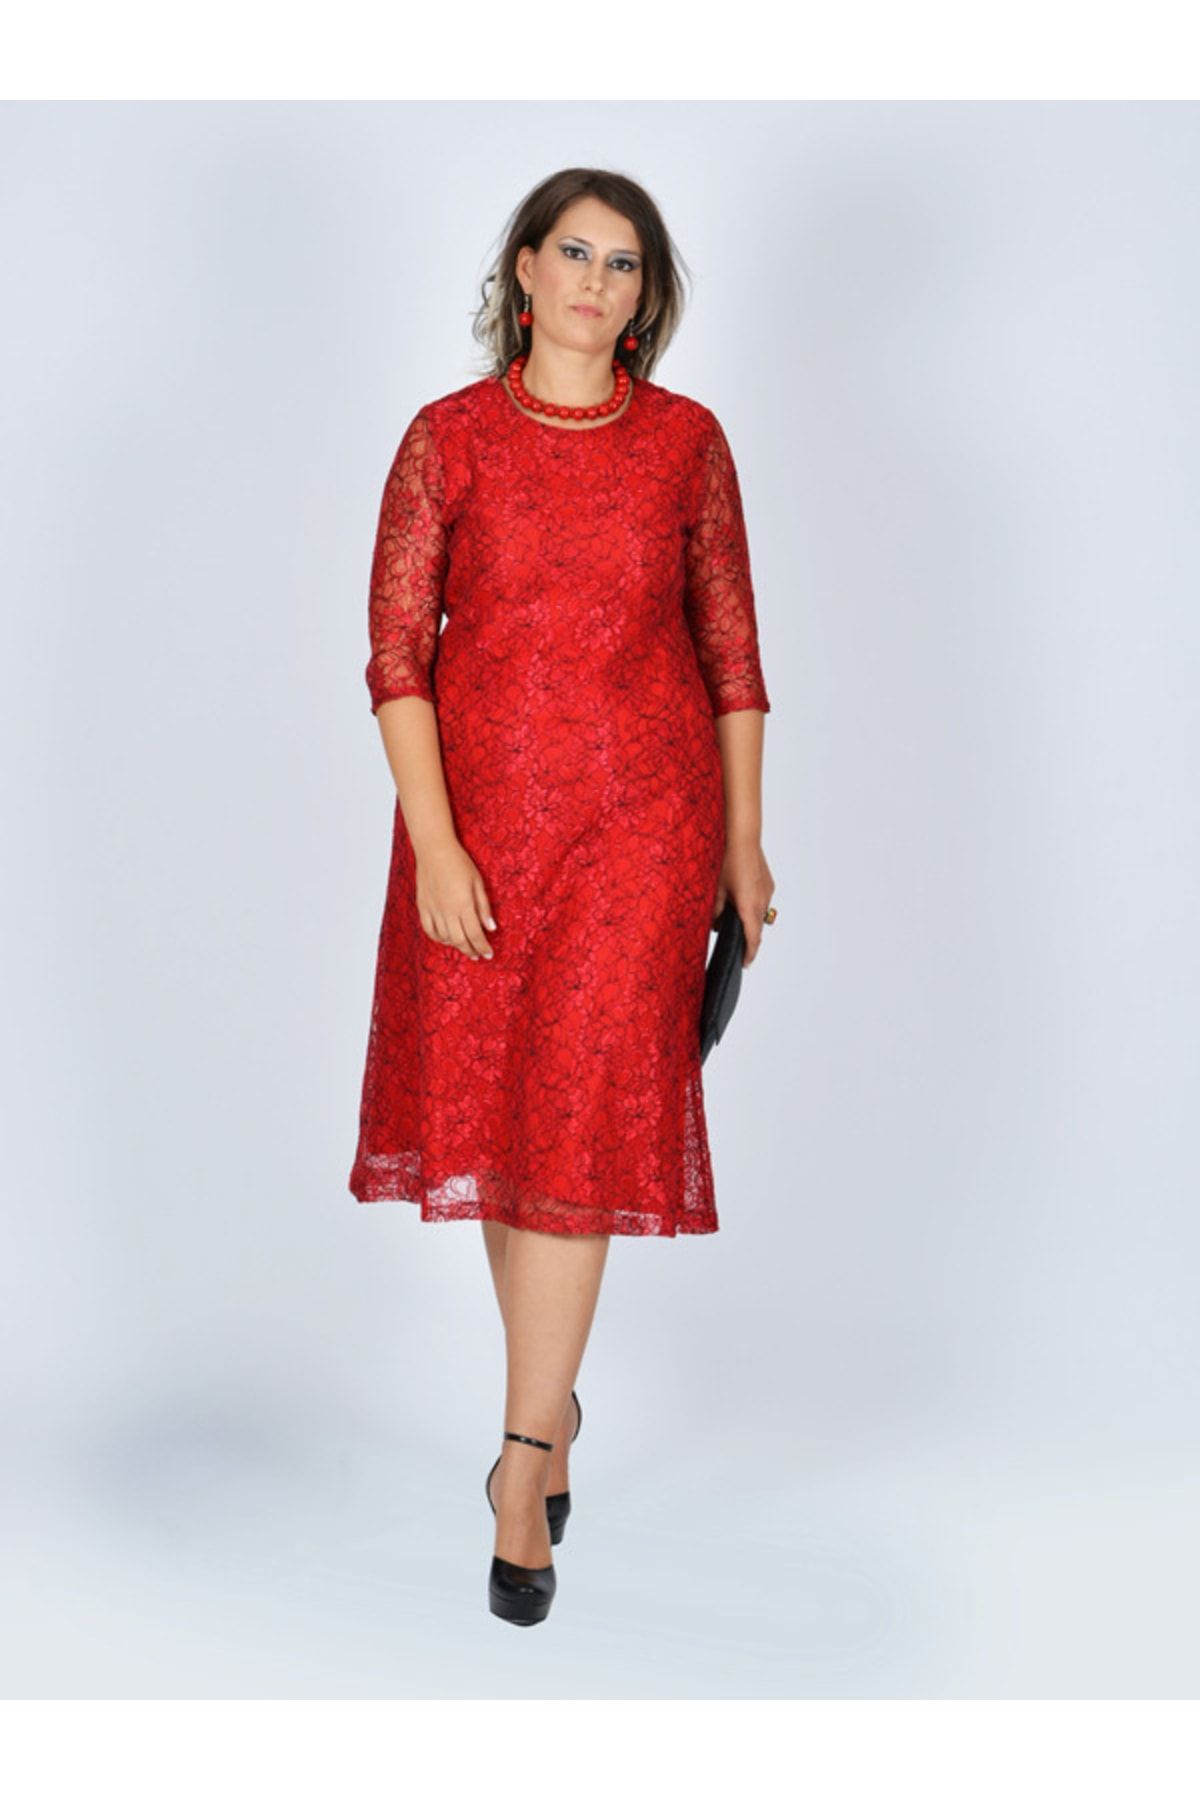 Nidya Moda Büyük Beden Kloş Kırmızı Dantel Abiye Elbise-4036k